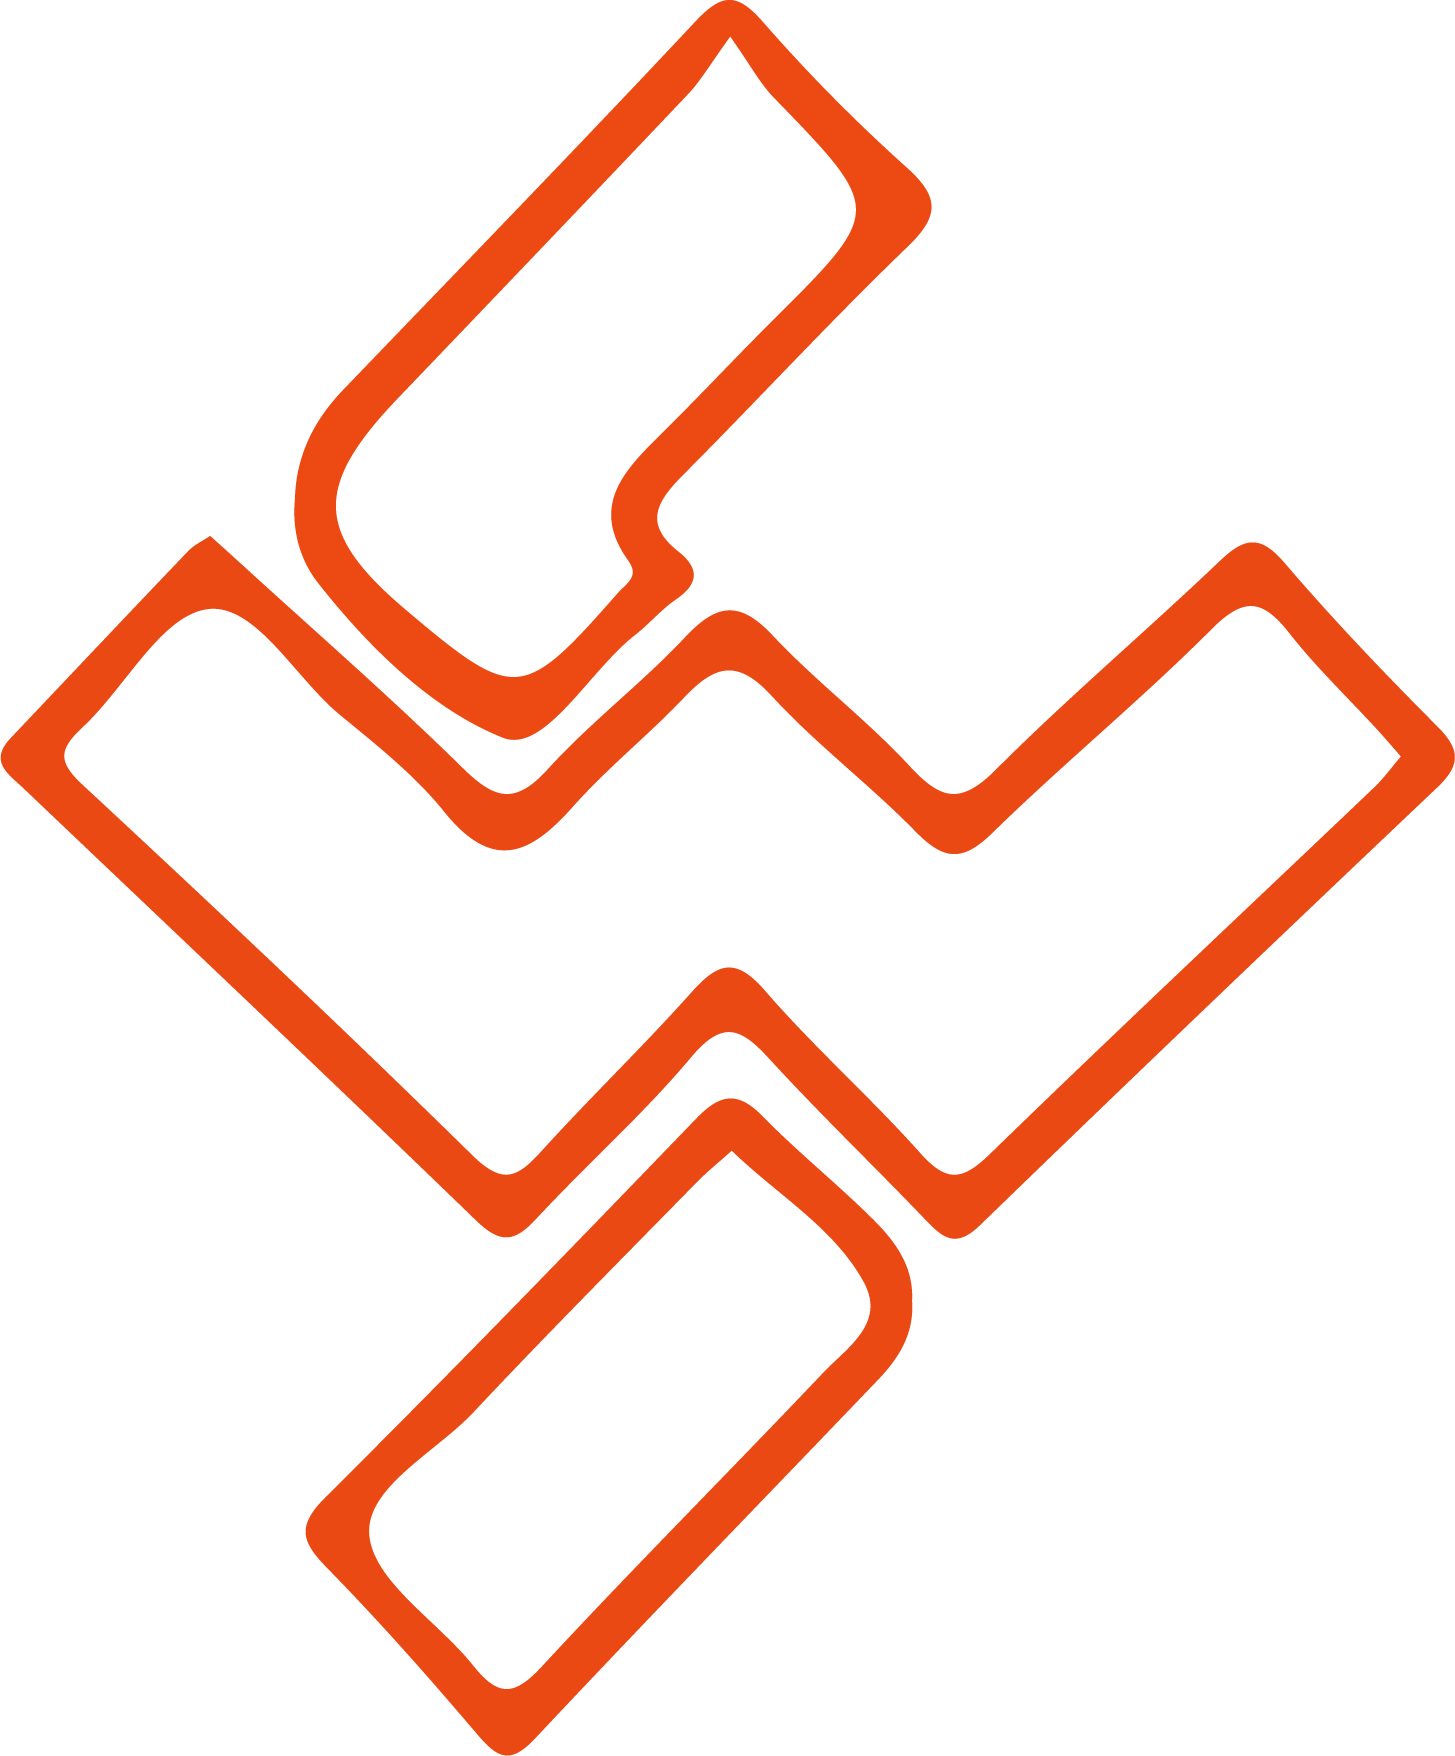 sterling & wilson solar logo (PNG transparent)